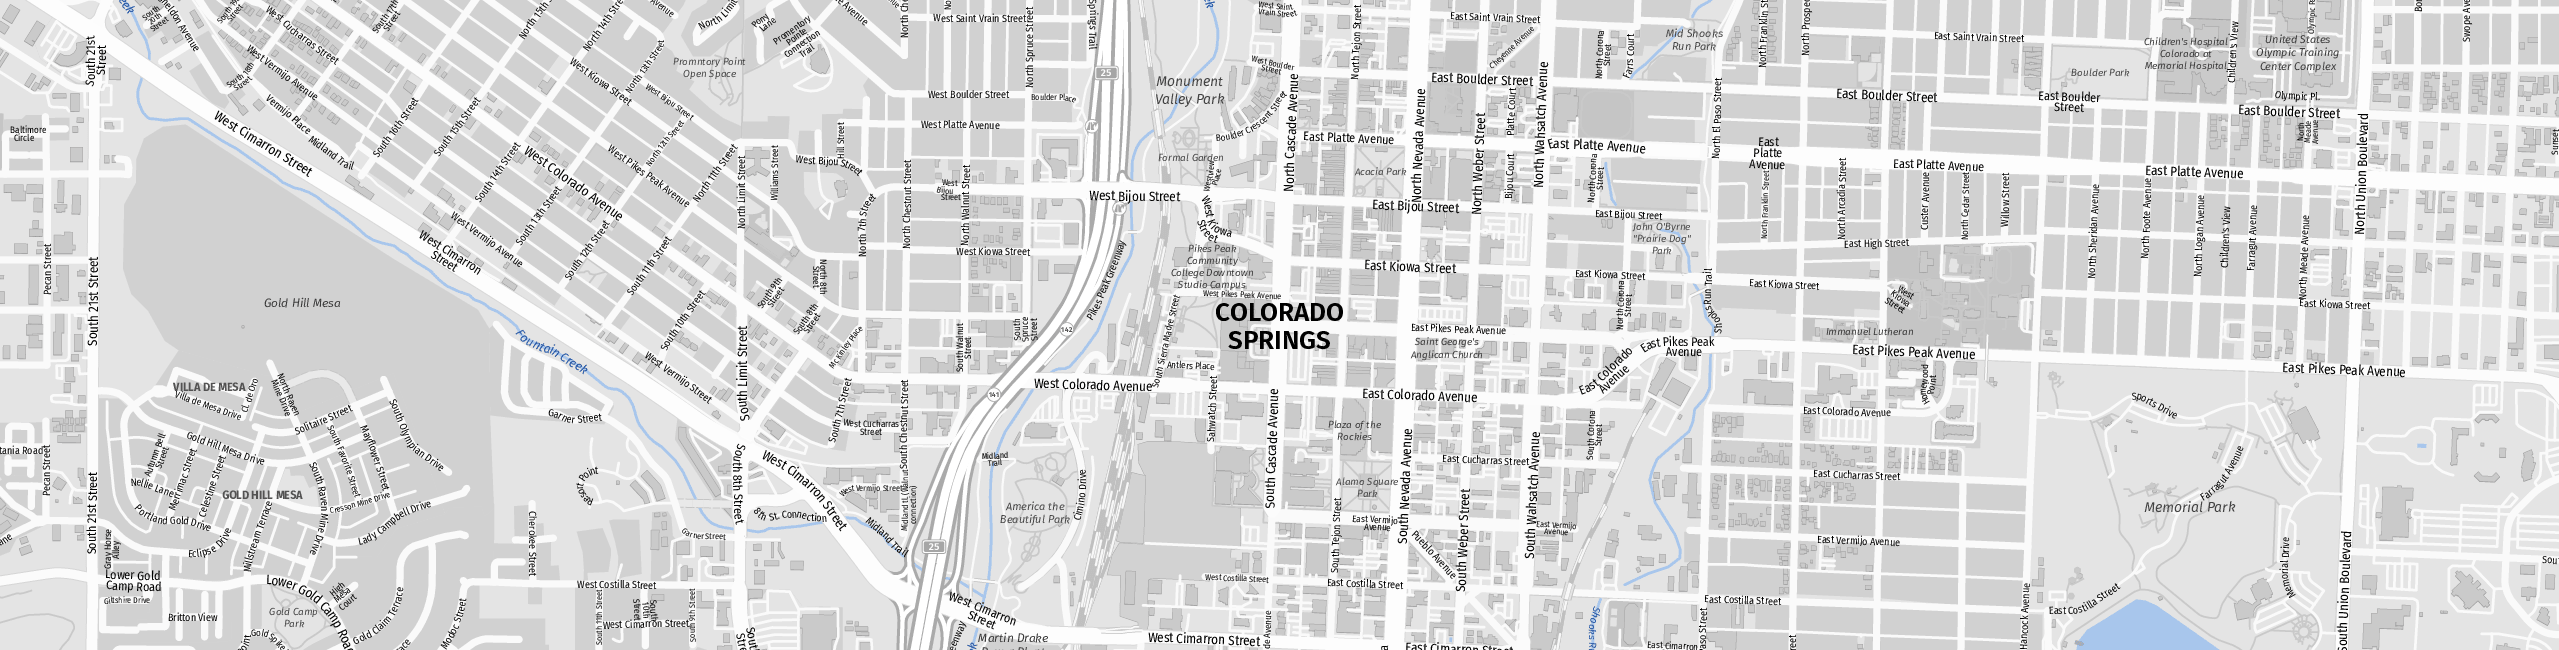 Stadtplan Colorado Springs zum Downloaden.